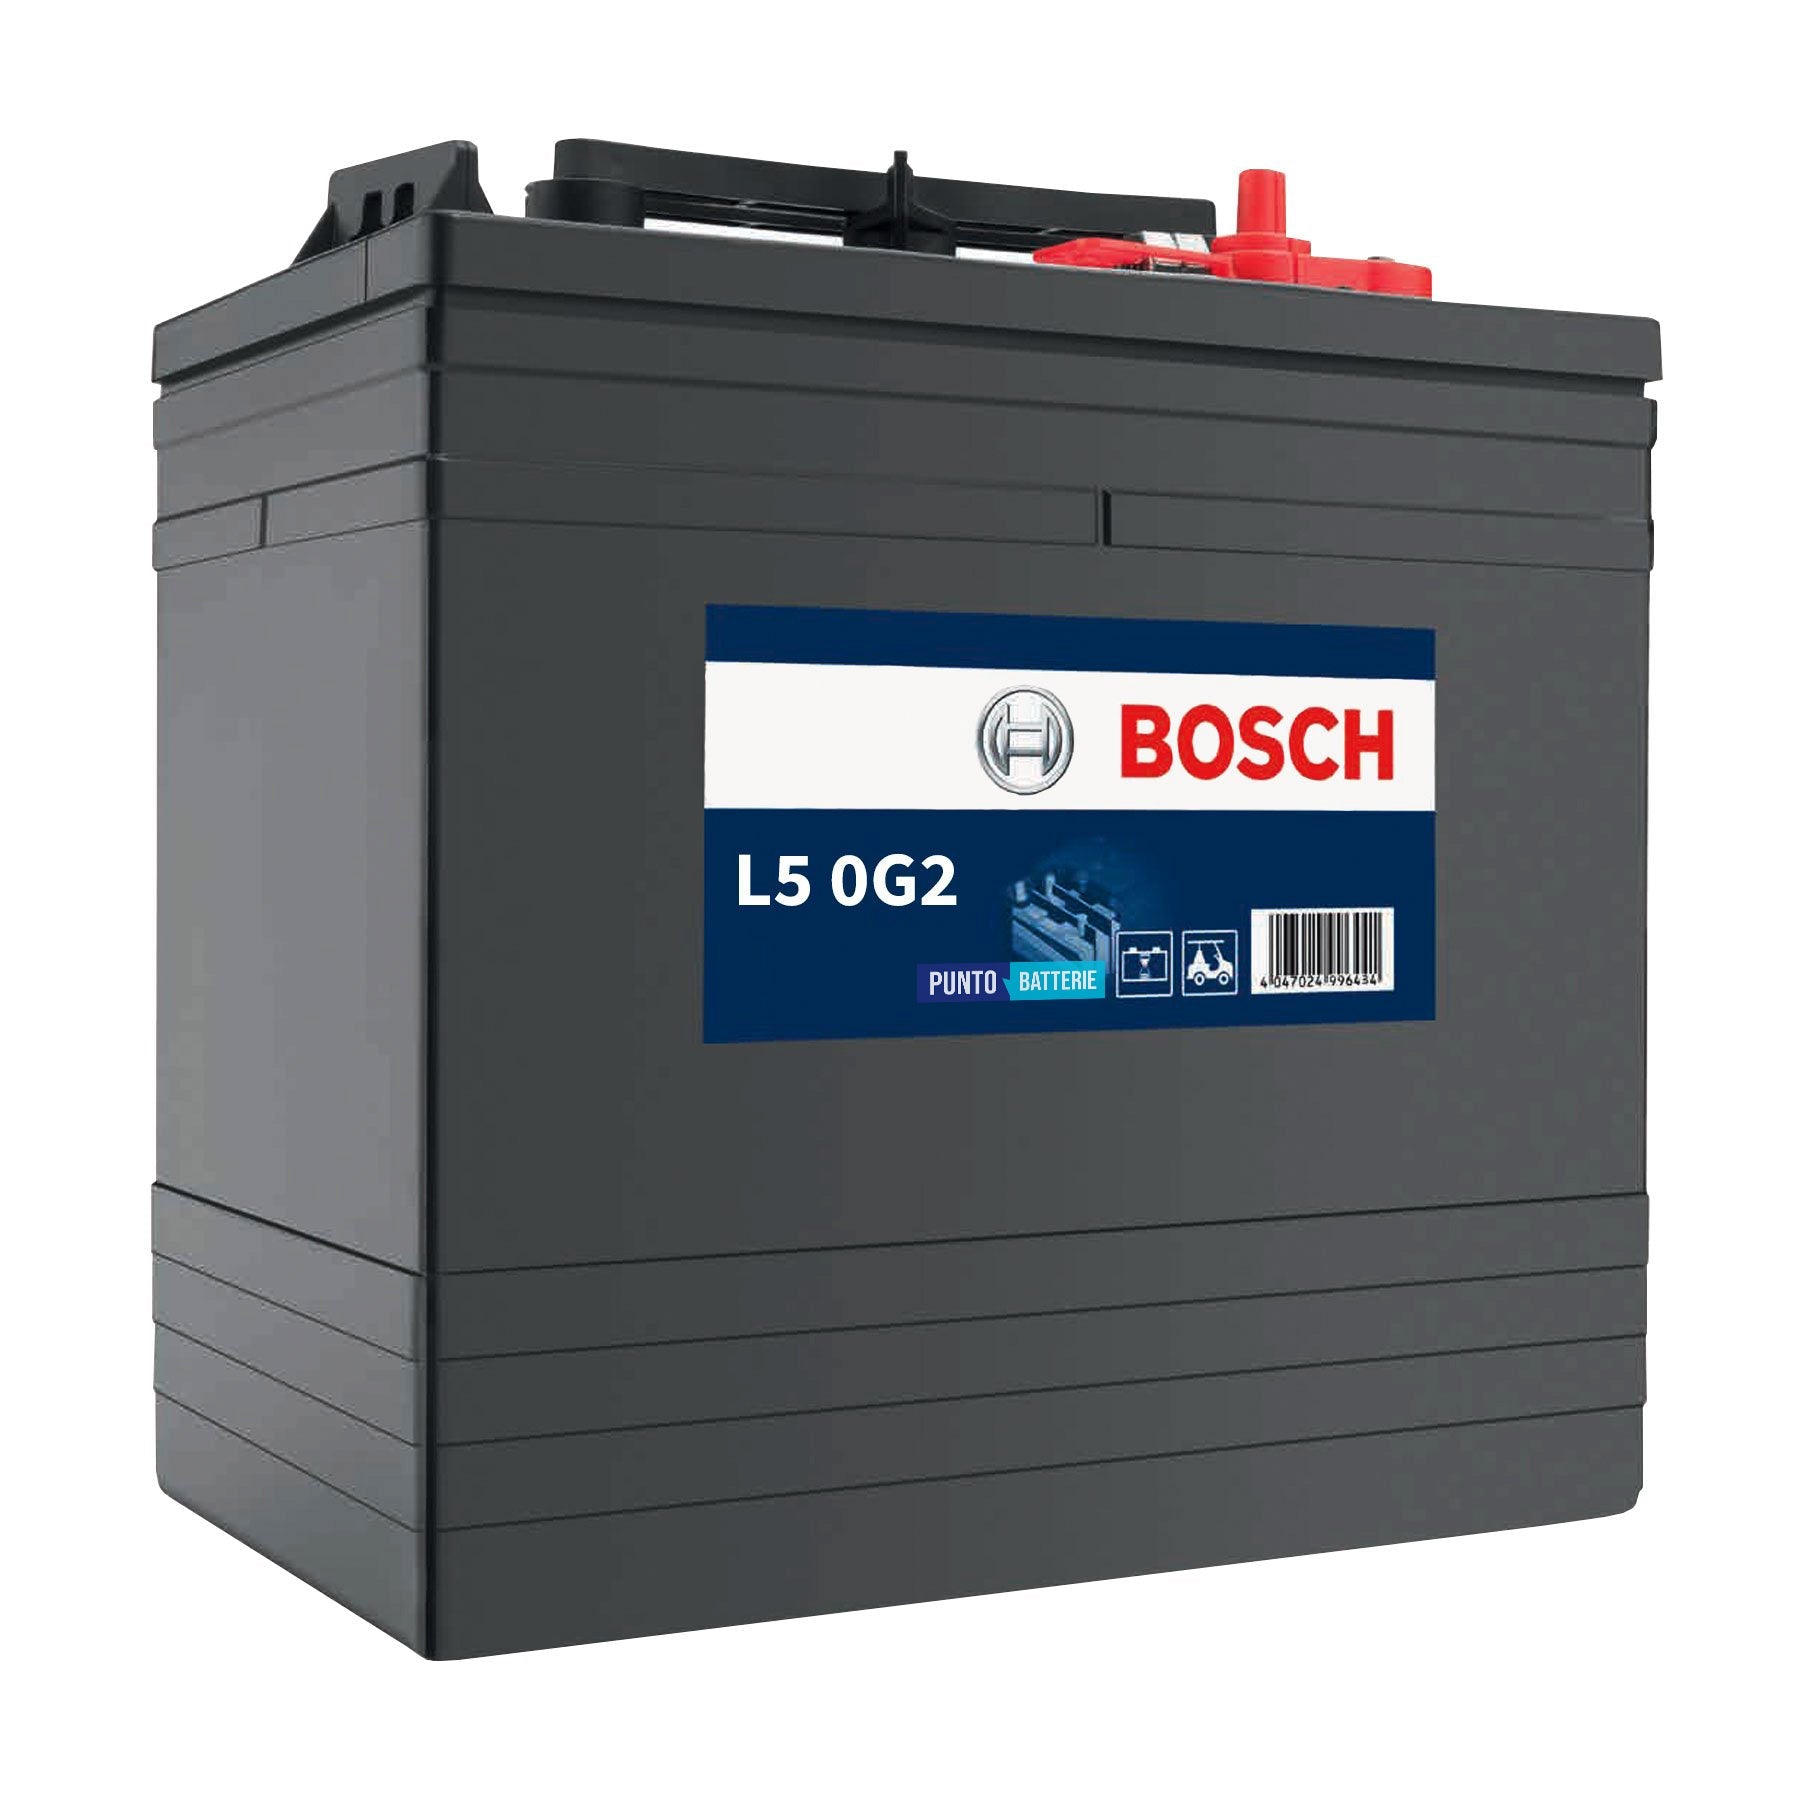 Batteria originale Bosch L5G L5 0G2, dimensioni 261 x 181 x 283, 6 volt, 216 amperora. Batteria per servizi di camper, barca e applicazioni a scarica lenta.